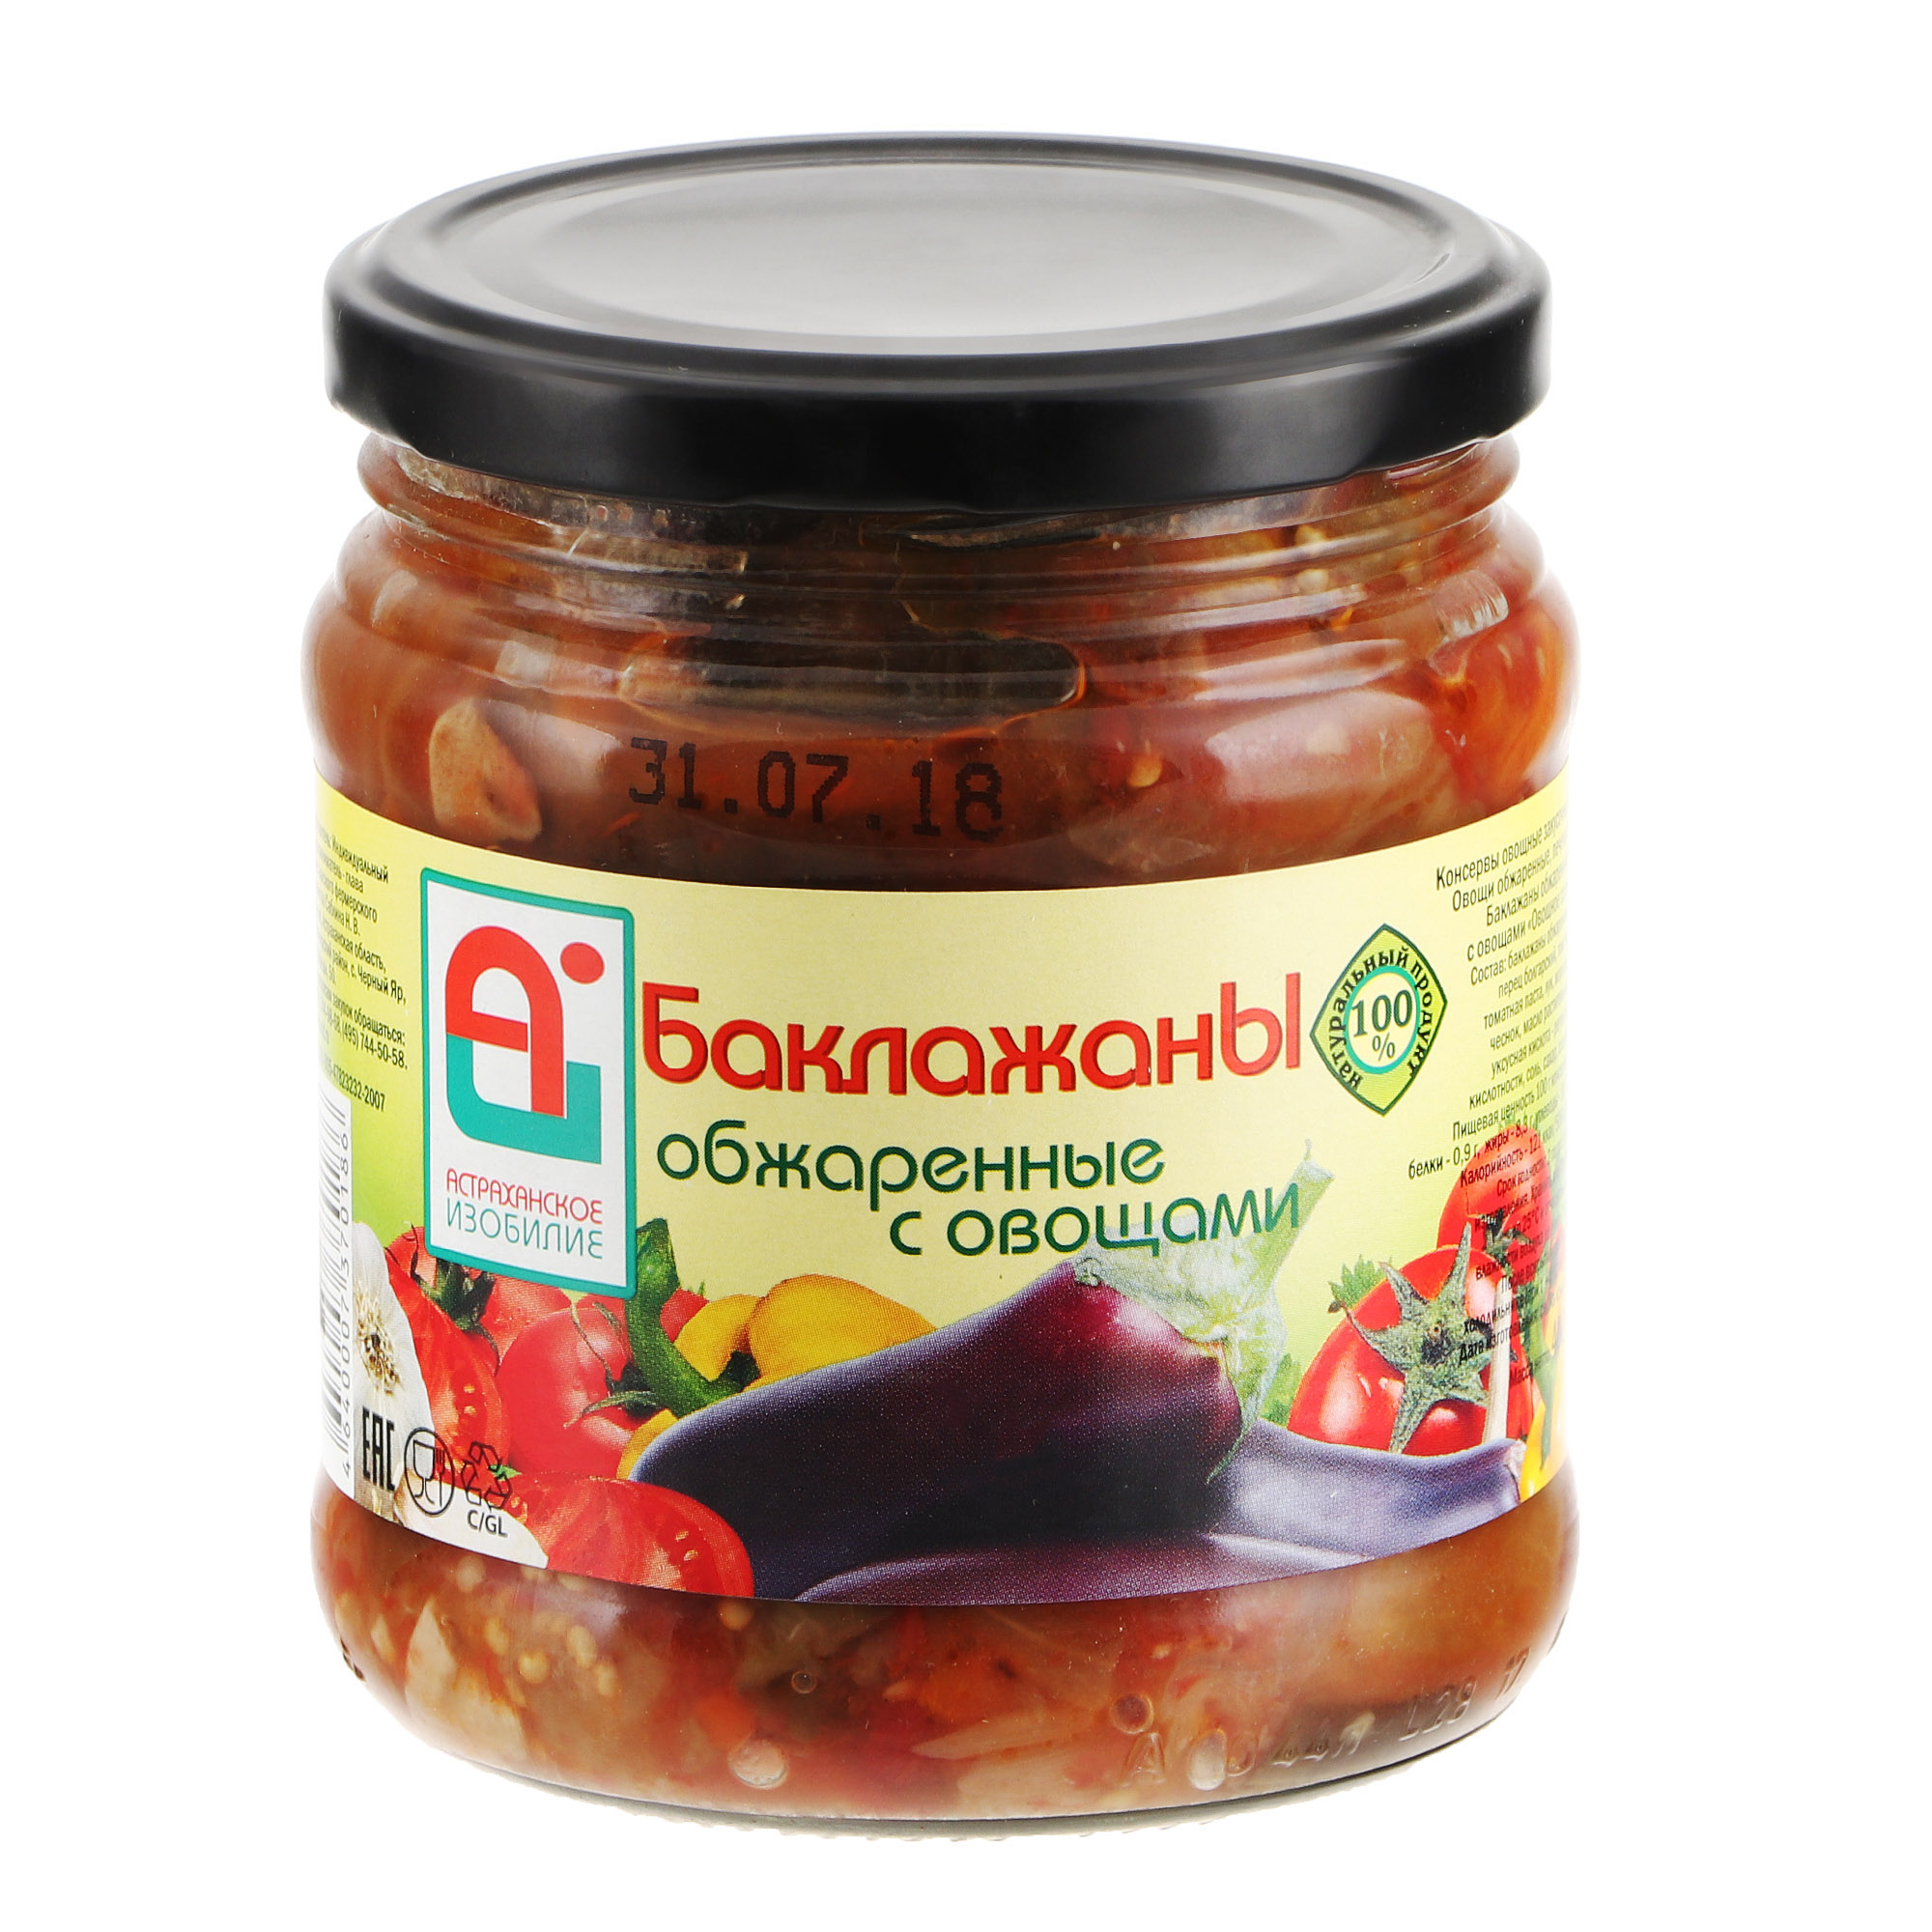 Баклажаны обжаренные Астраханское Изобилие с овощами 500 г аджика астраханское изобилие острая 500 г